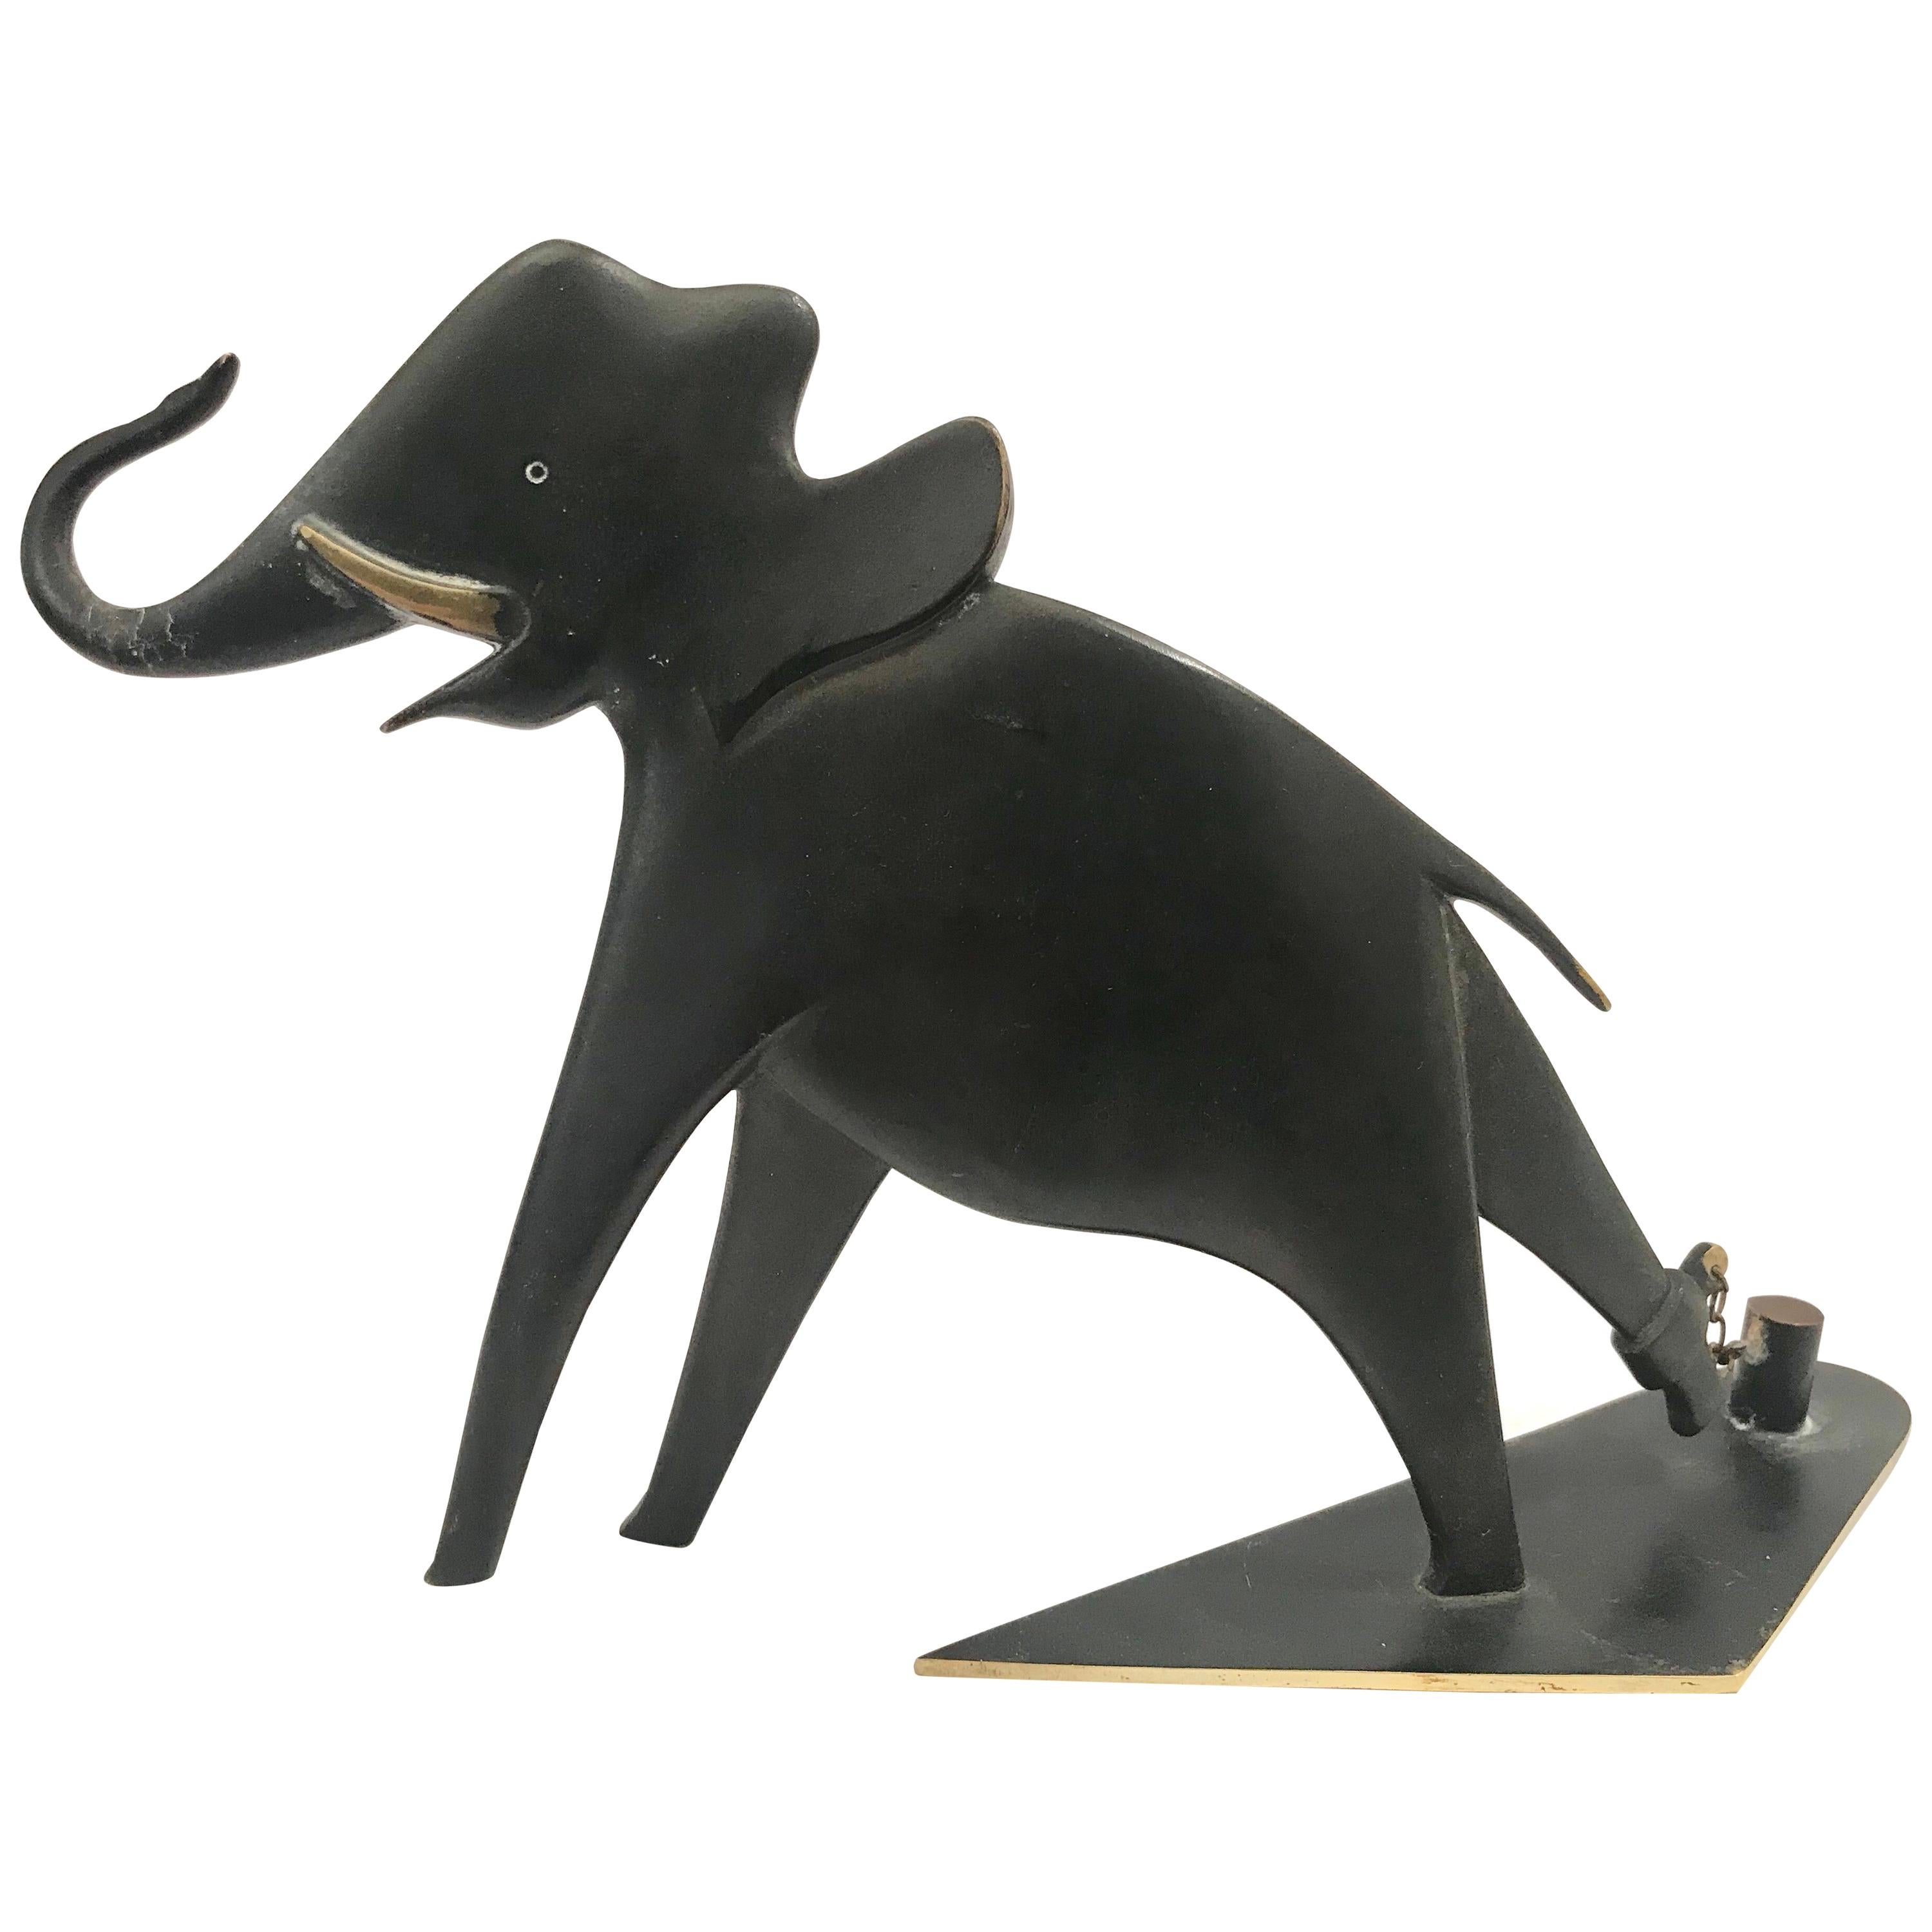 Werkstatte Hagenauer Wien Patinated Bronze Elephant For Sale